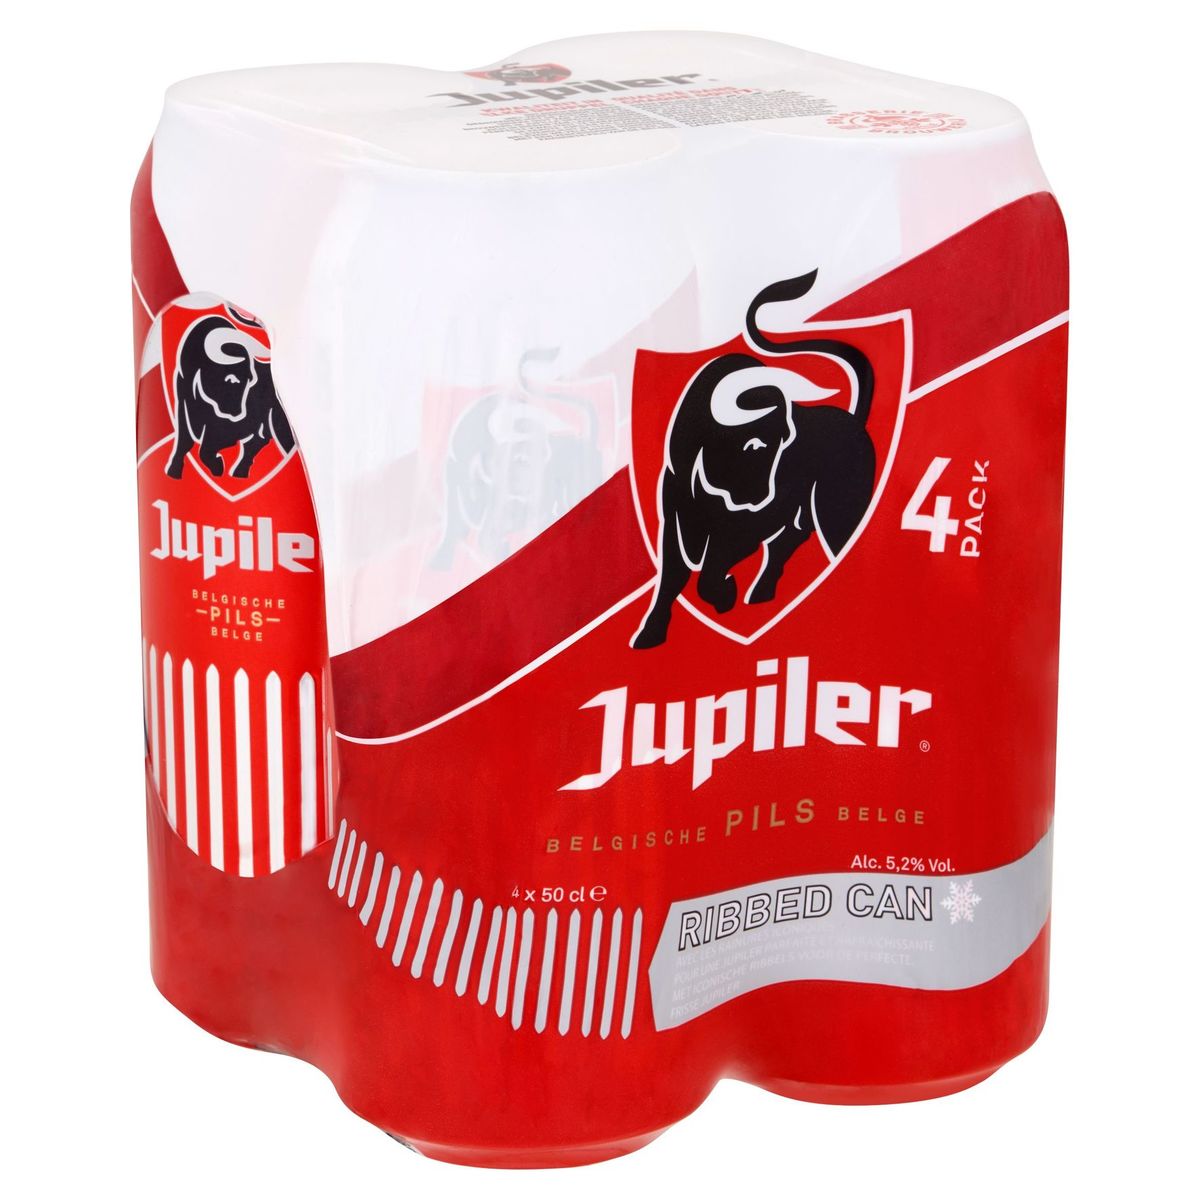 Jupiler Pils Belge Canettes 4 x 50 cl